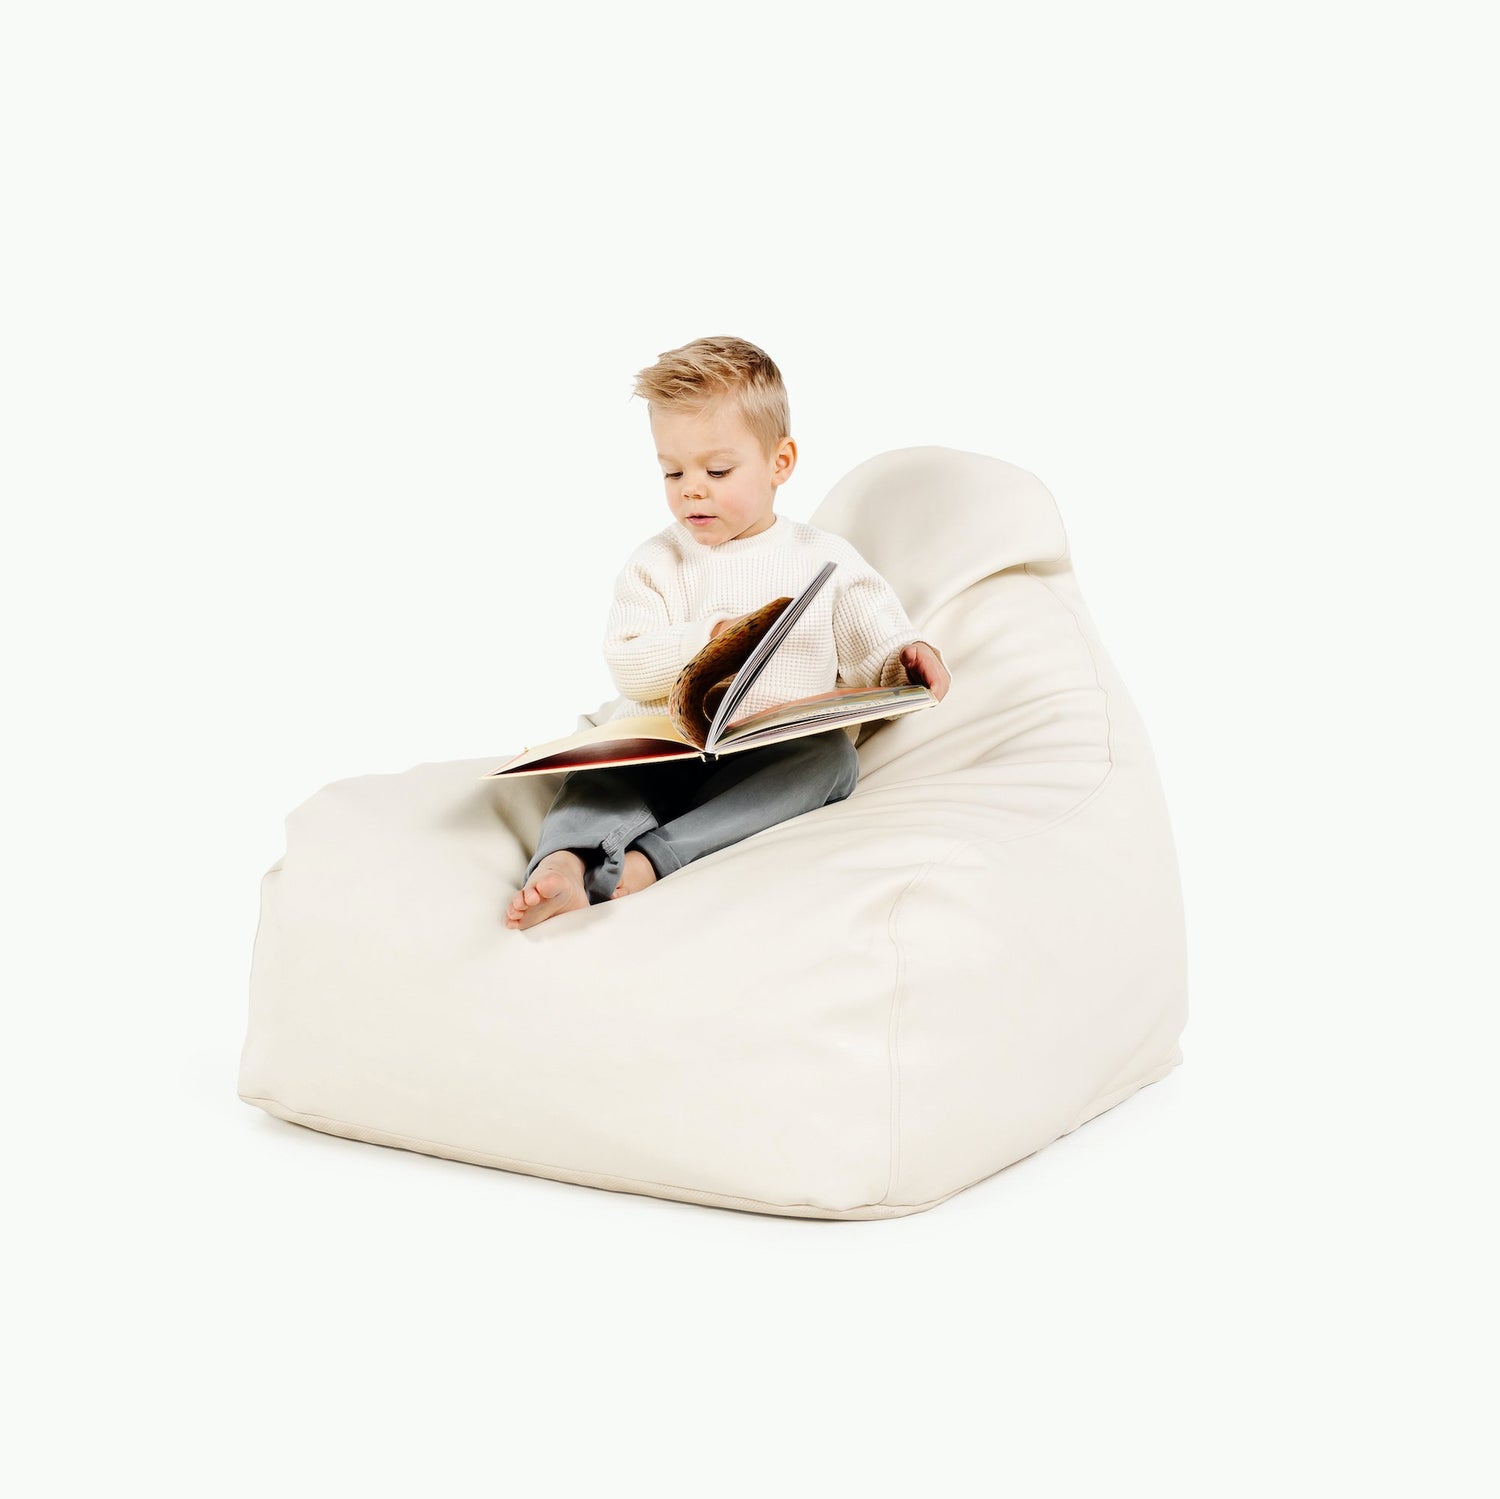 Jaxx® Lounger 7ft. Giant Bean Bag Couch | Jaxxbeanbags.com